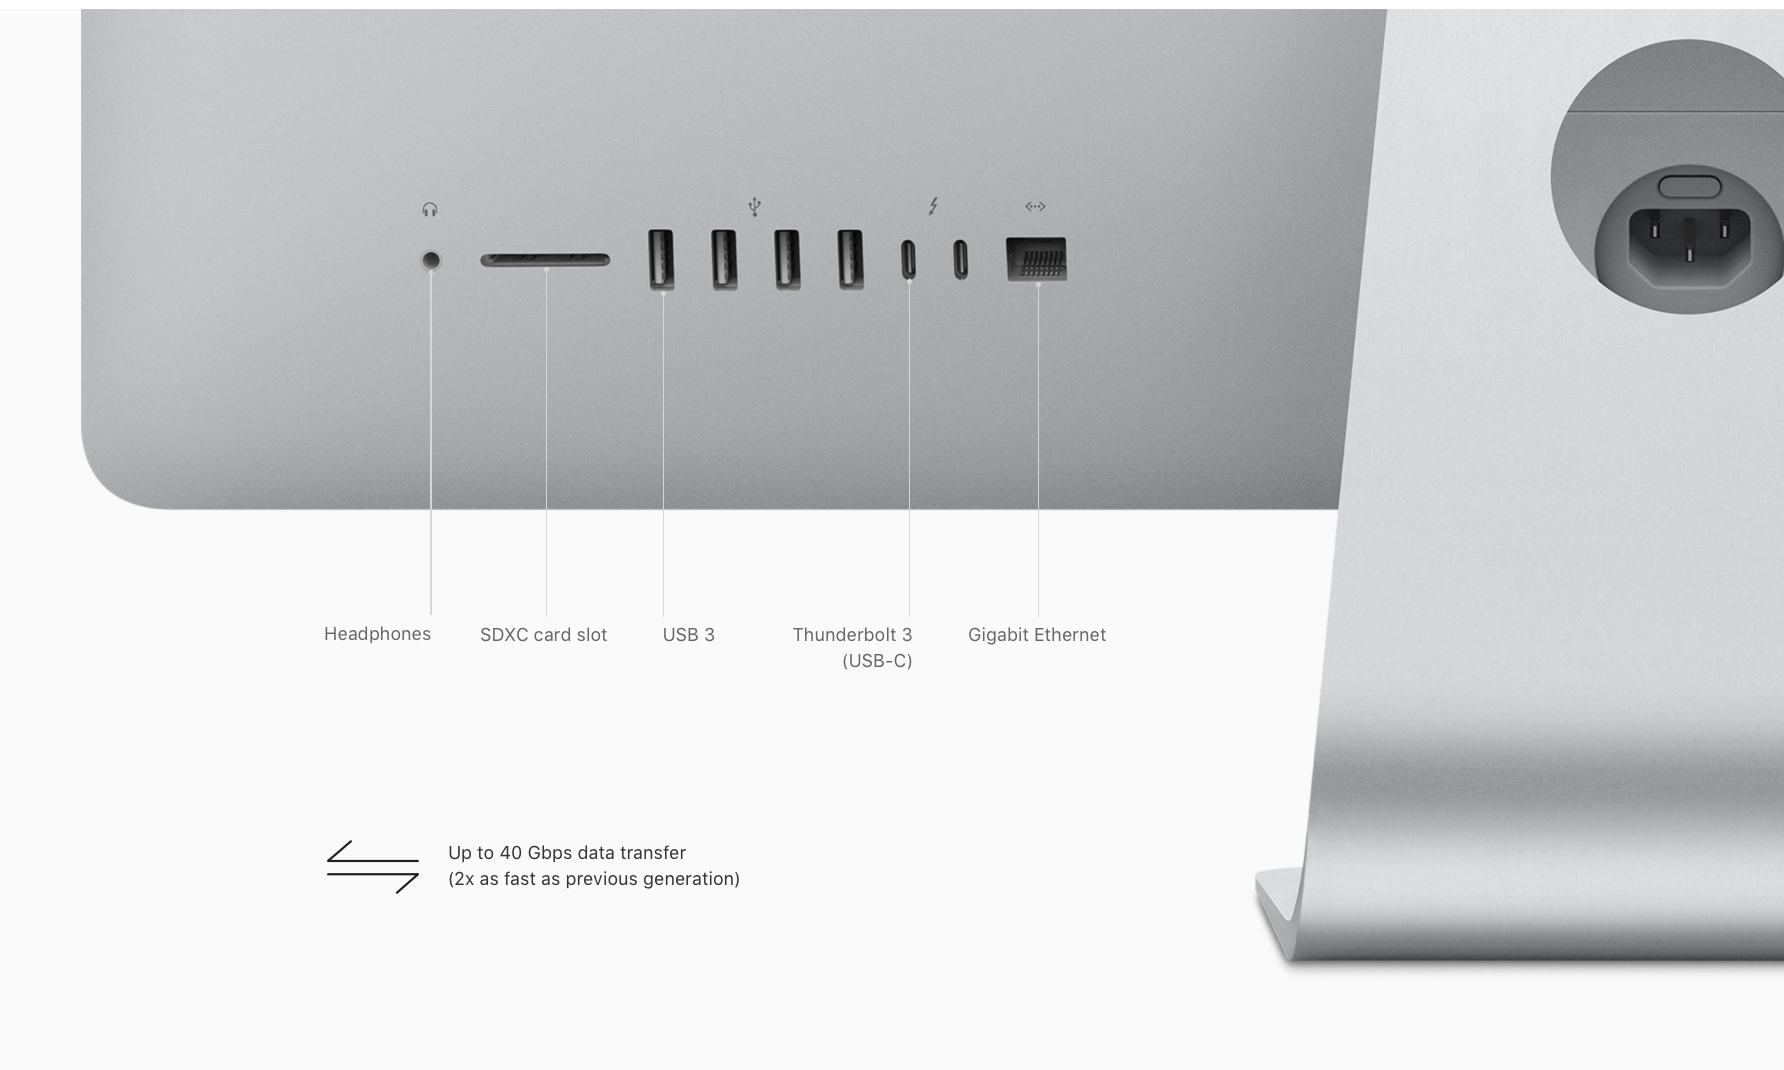 iMac 21.5 inch 2017 (Retina 4K) - 3.0GHZ Quad Core i5 - 8GB - 1TB Storage